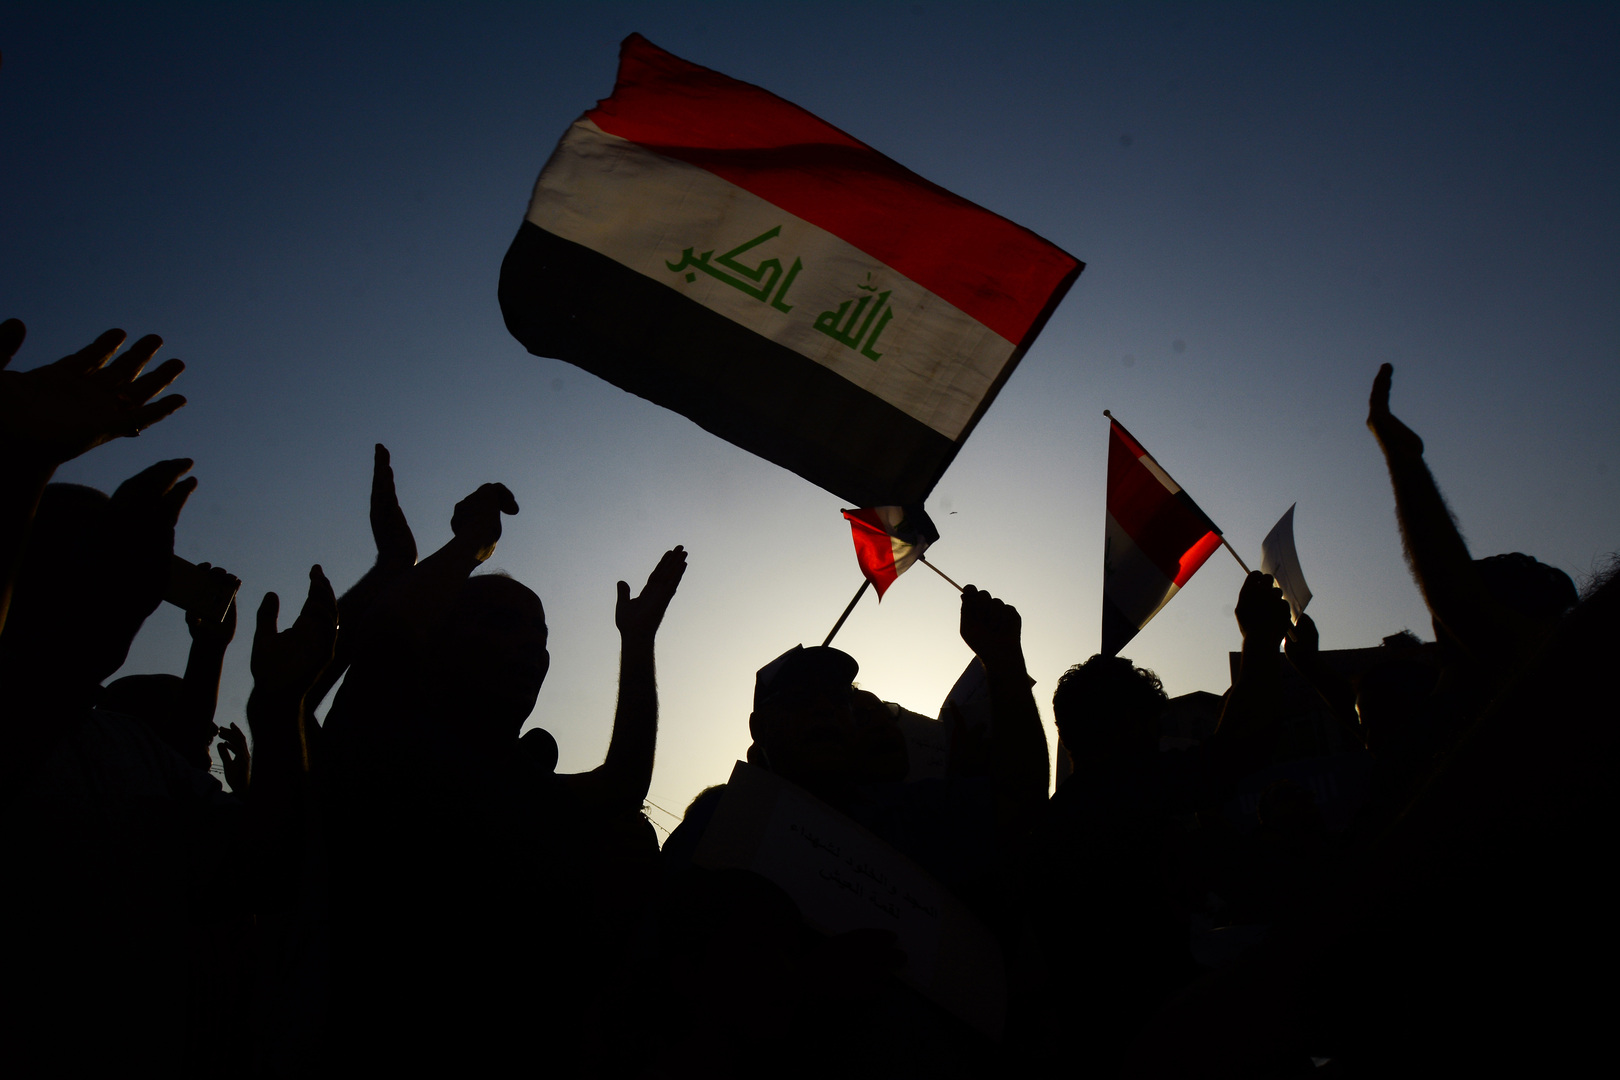 نشطاء عراقيون يتحدثون عن اختفاء نحو 60 مليون دولار أمريكي خلال أحداث المنطقة الخضراء